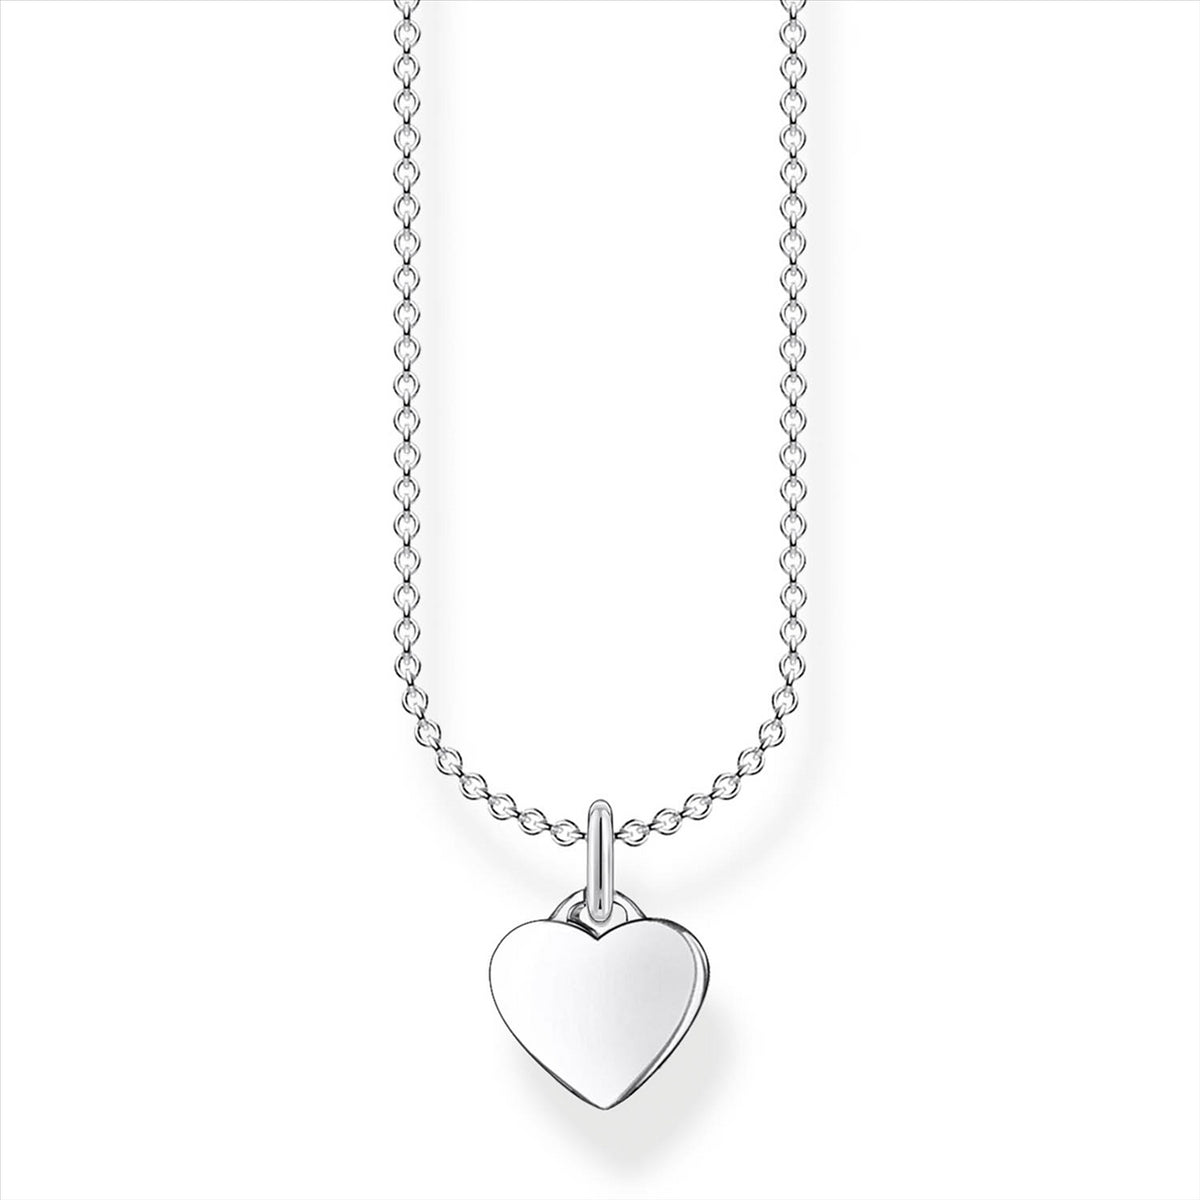 Thomas Sabo Small Heart Necklace 38-45cm